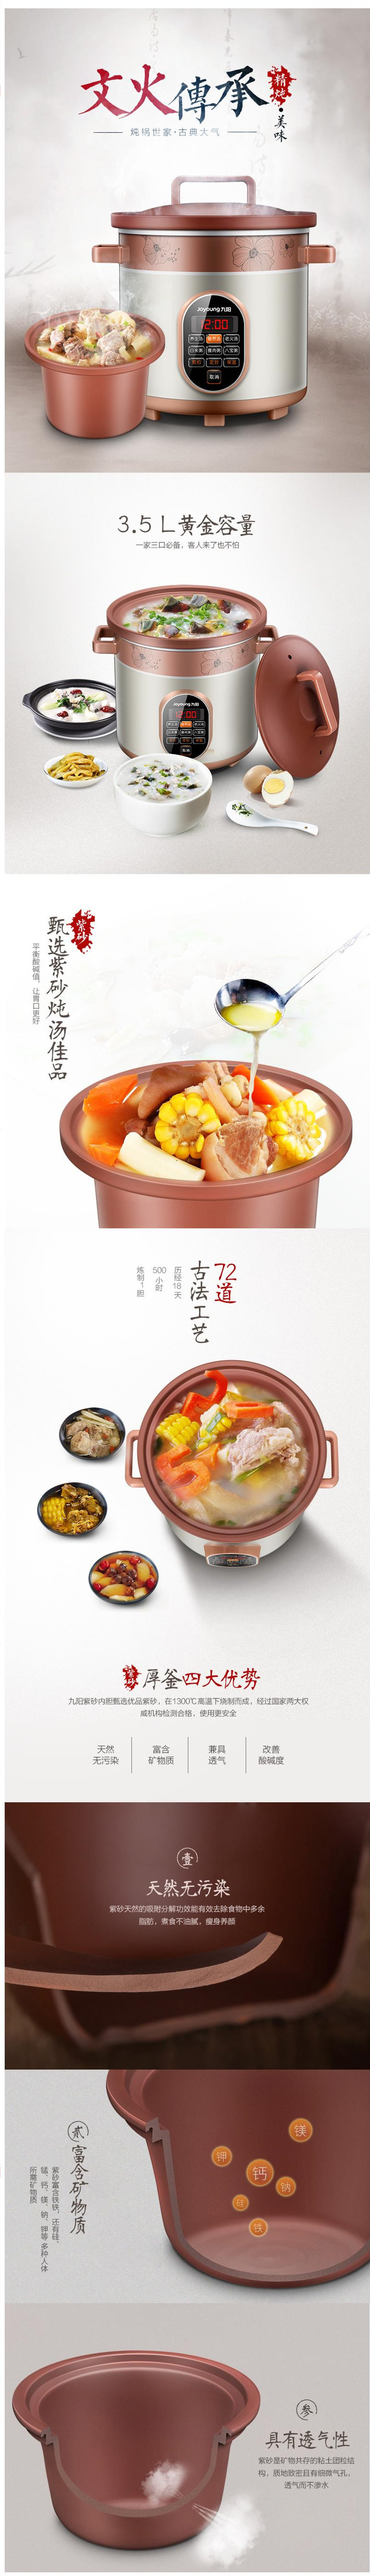 【家用电器】 仅售149元包邮！九阳 JYZS-M3525电炖锅3.5L紫砂锅煮粥煲汤锅家用全自动